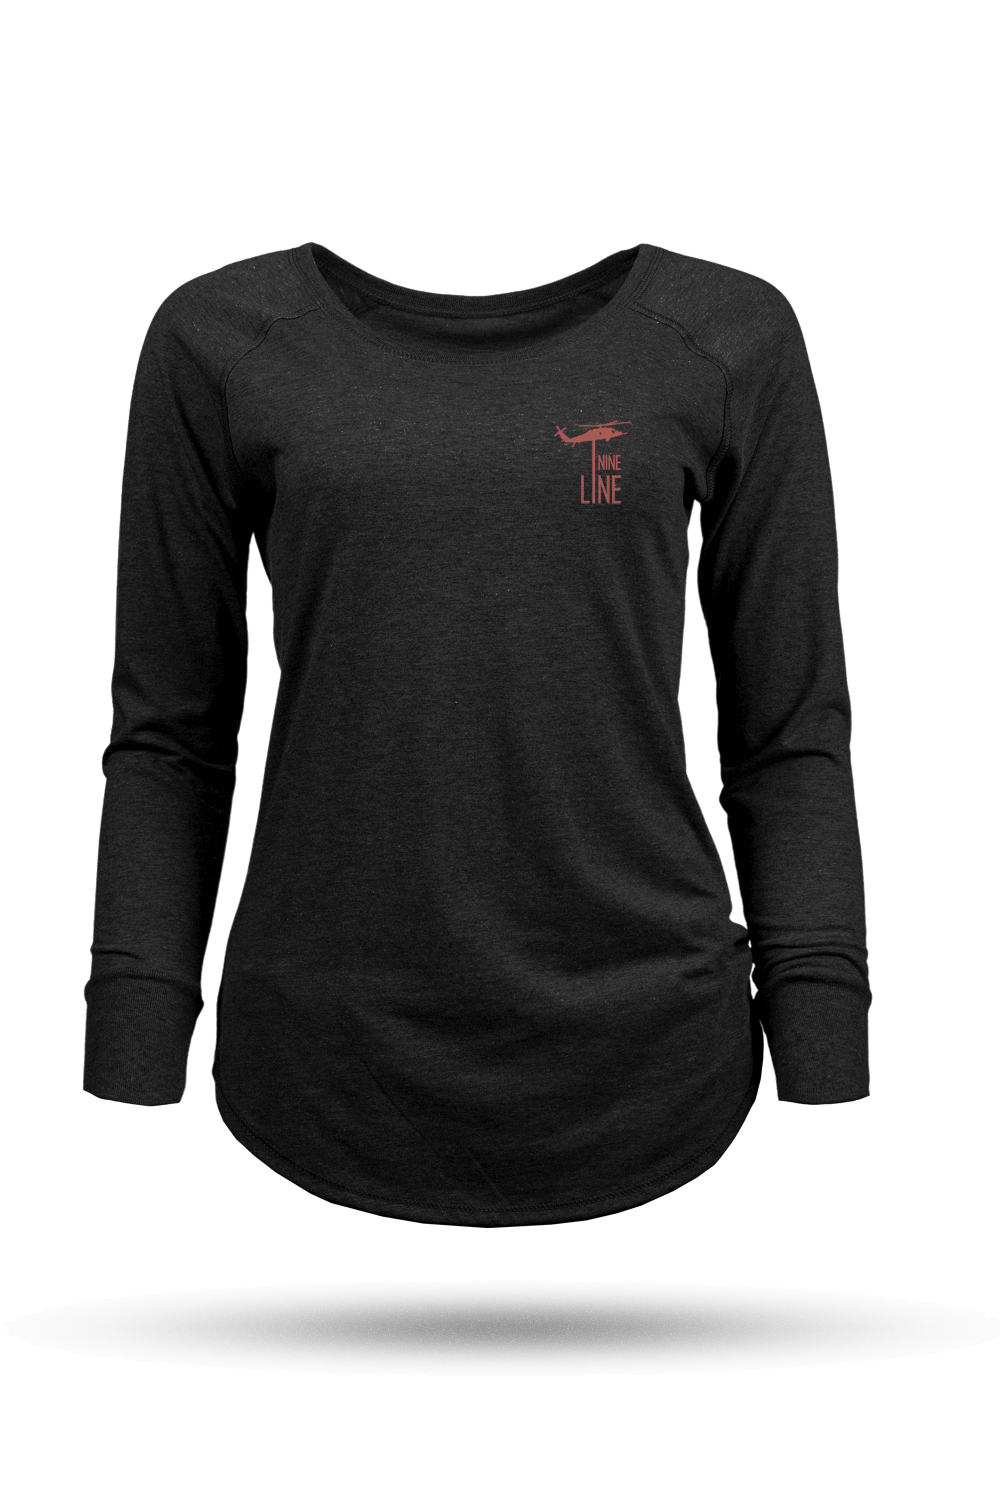 Women's Long-Sleeve Shirt - Caduceus